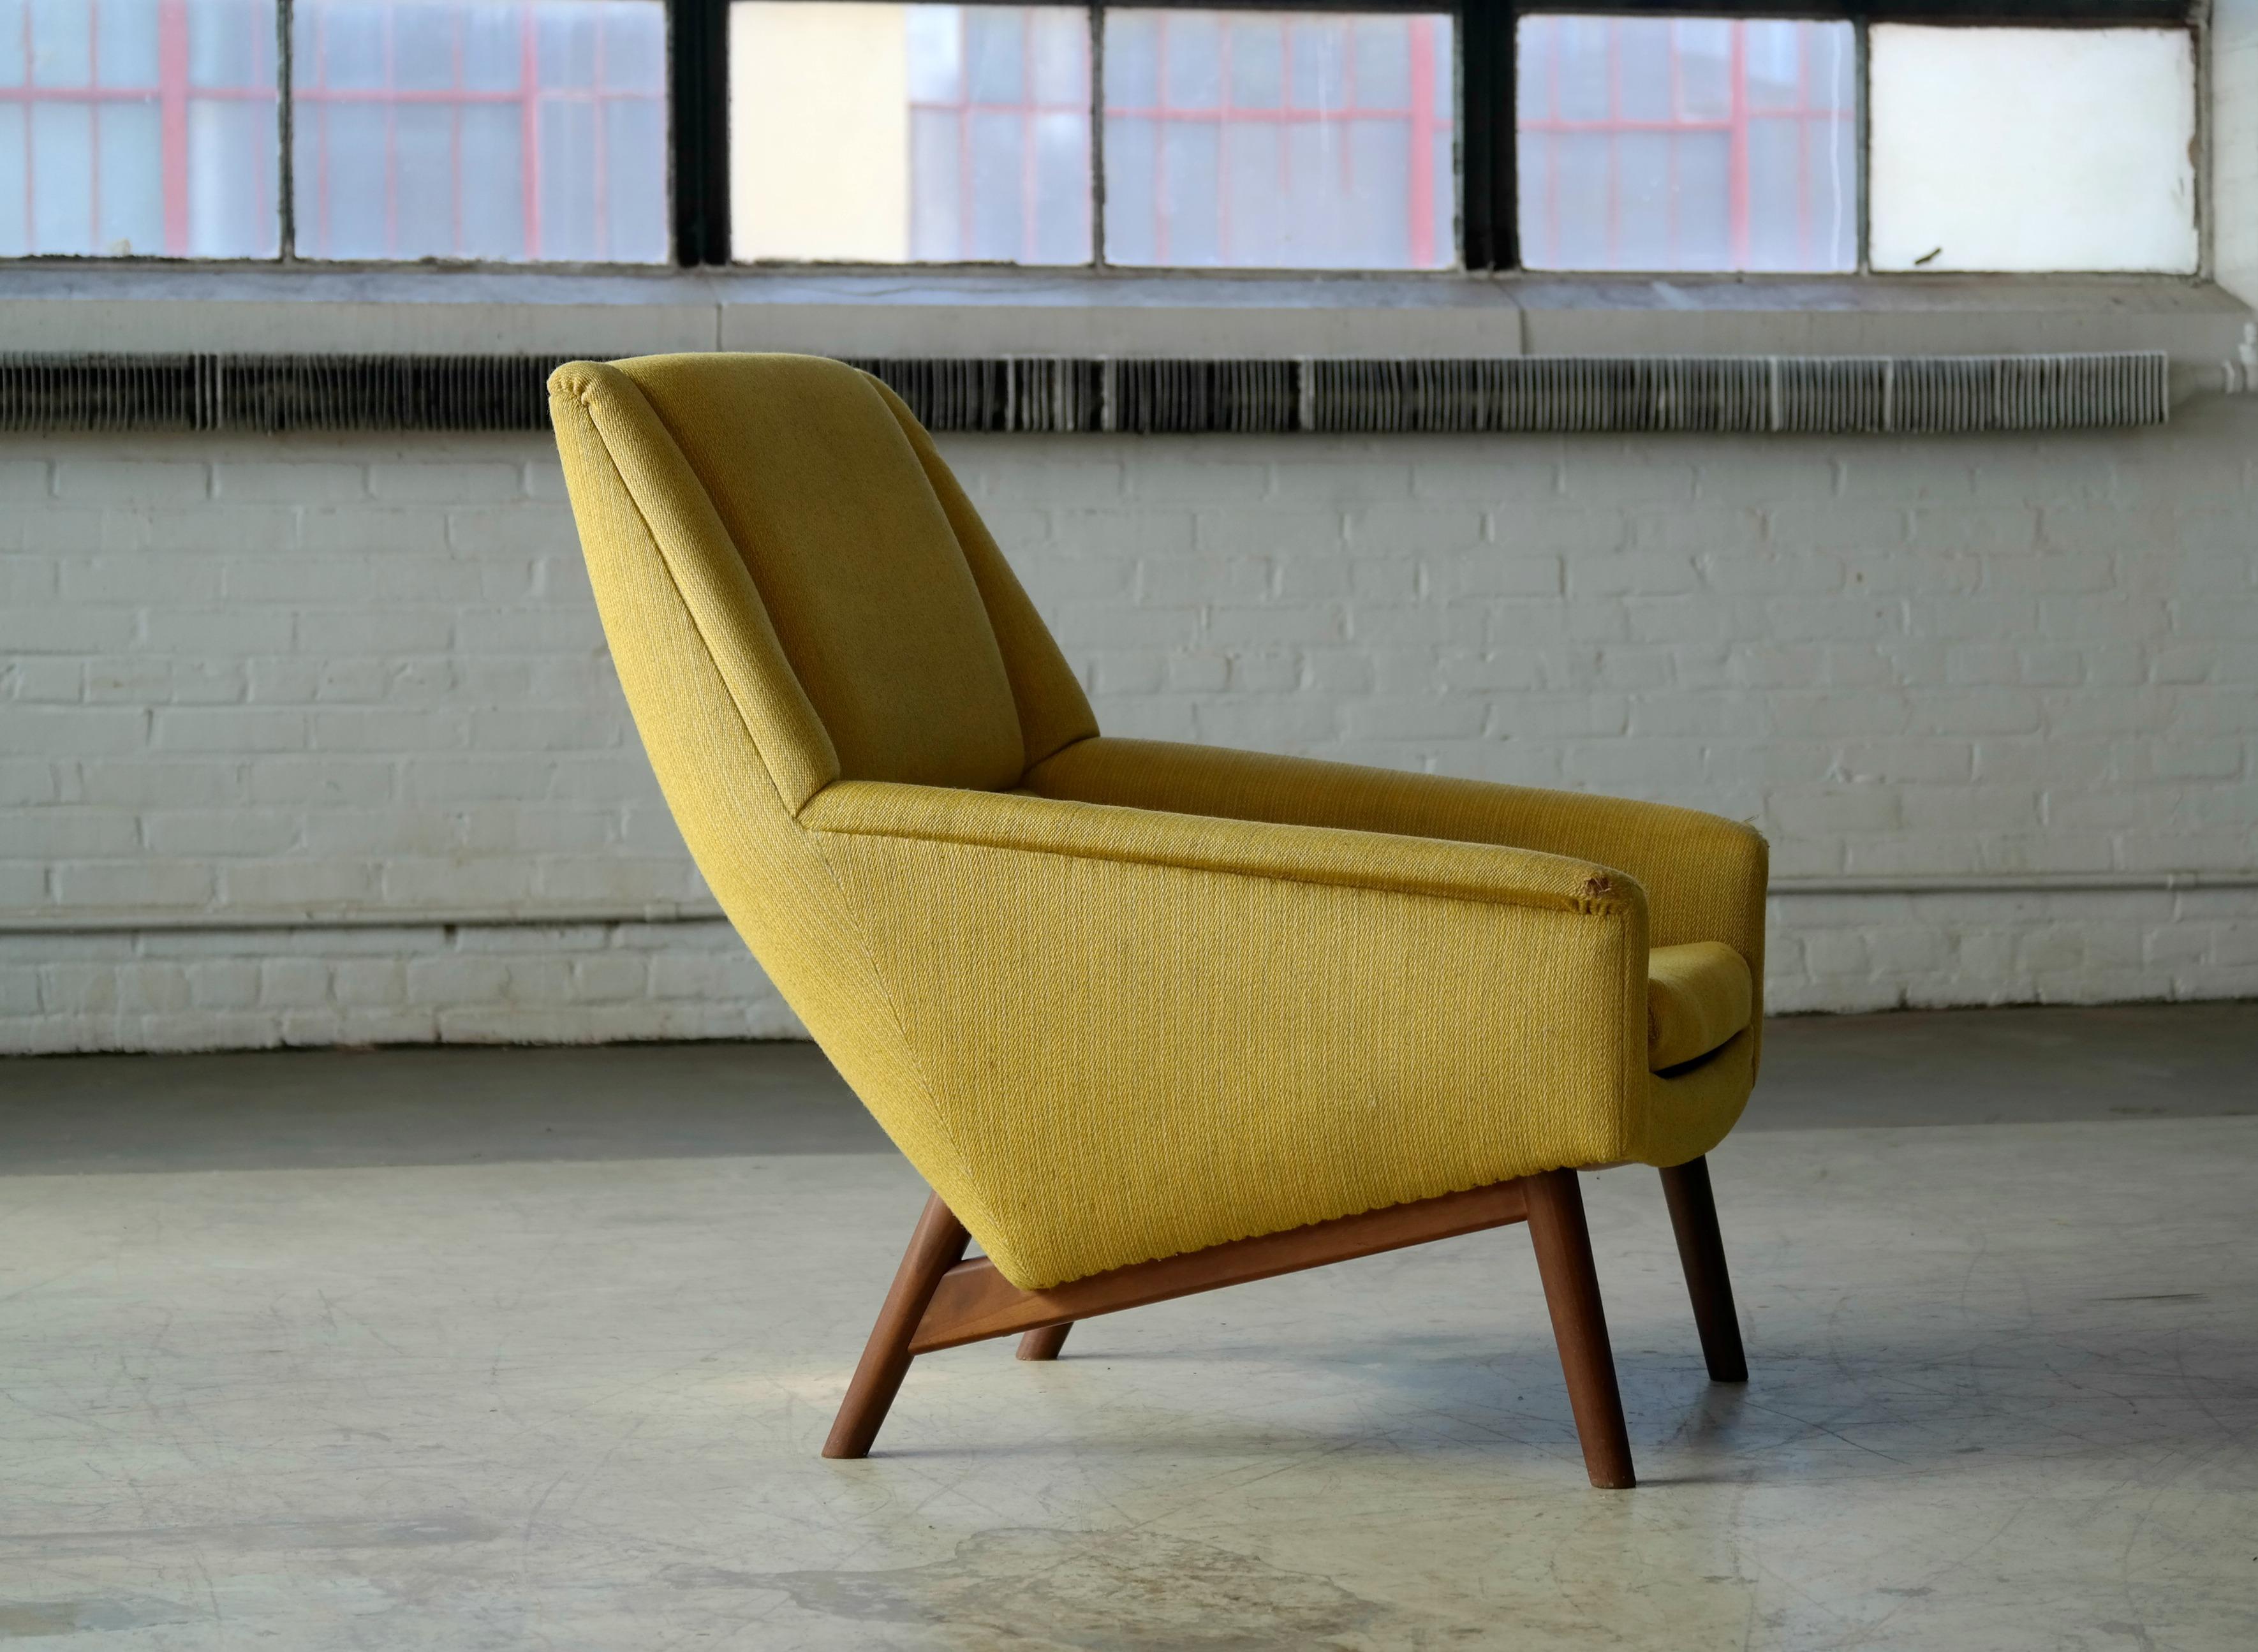 Mid-20th Century Folke Ohlsson 1950s Teak Lounge Chair for Fritz Hansen Danish Midcentury